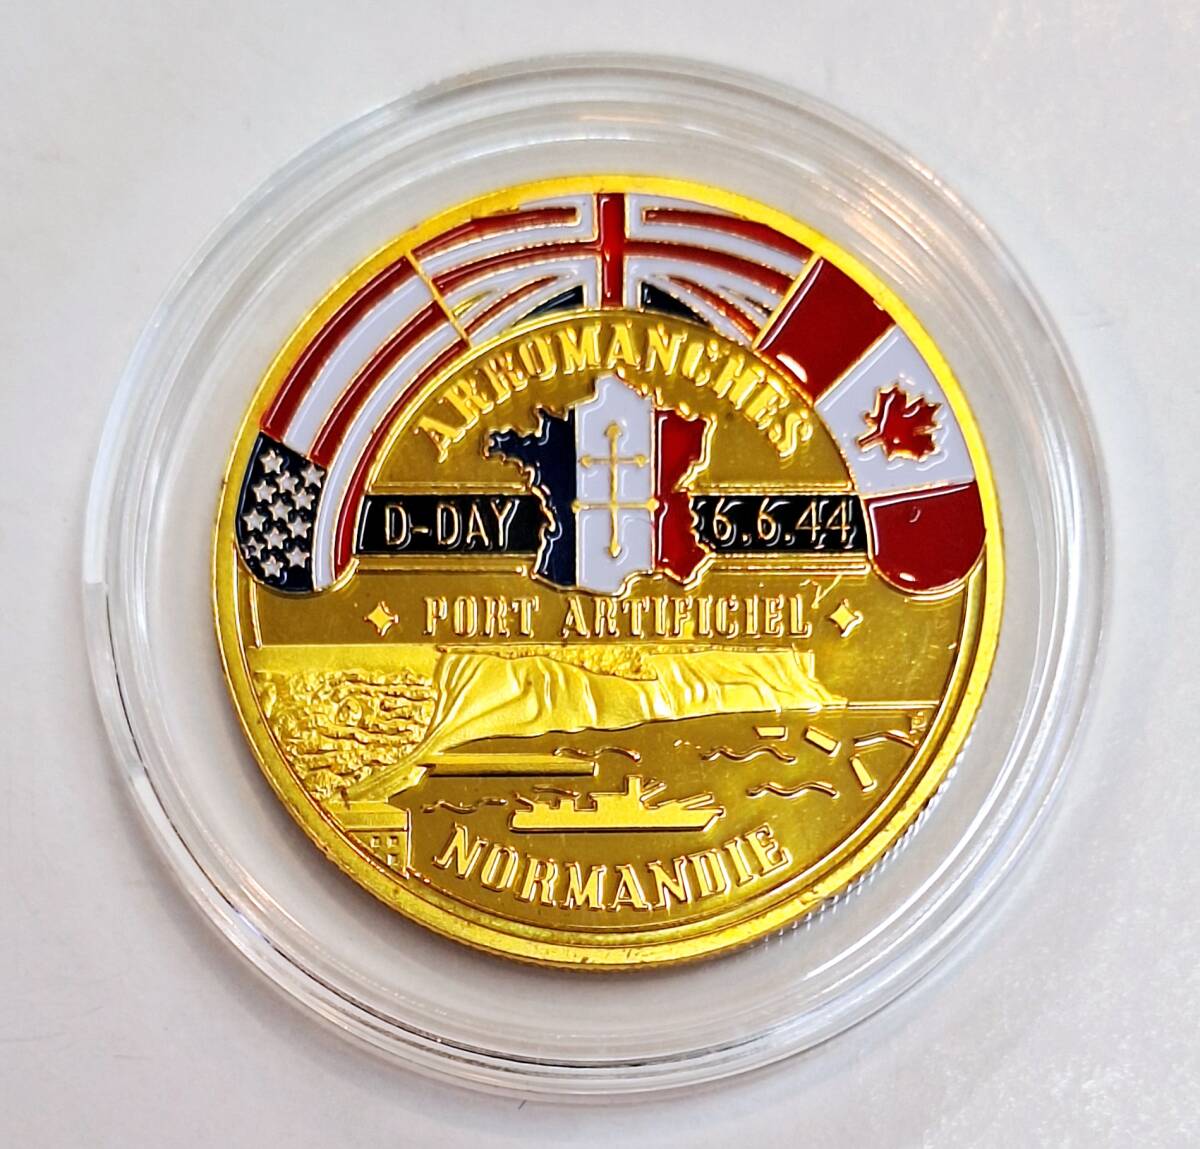 アメリカ ノルマンディー上陸作戦 70th記念 チャレンジコイン 金メッキ 記念コイン コレクションコイン 金メダル 大型